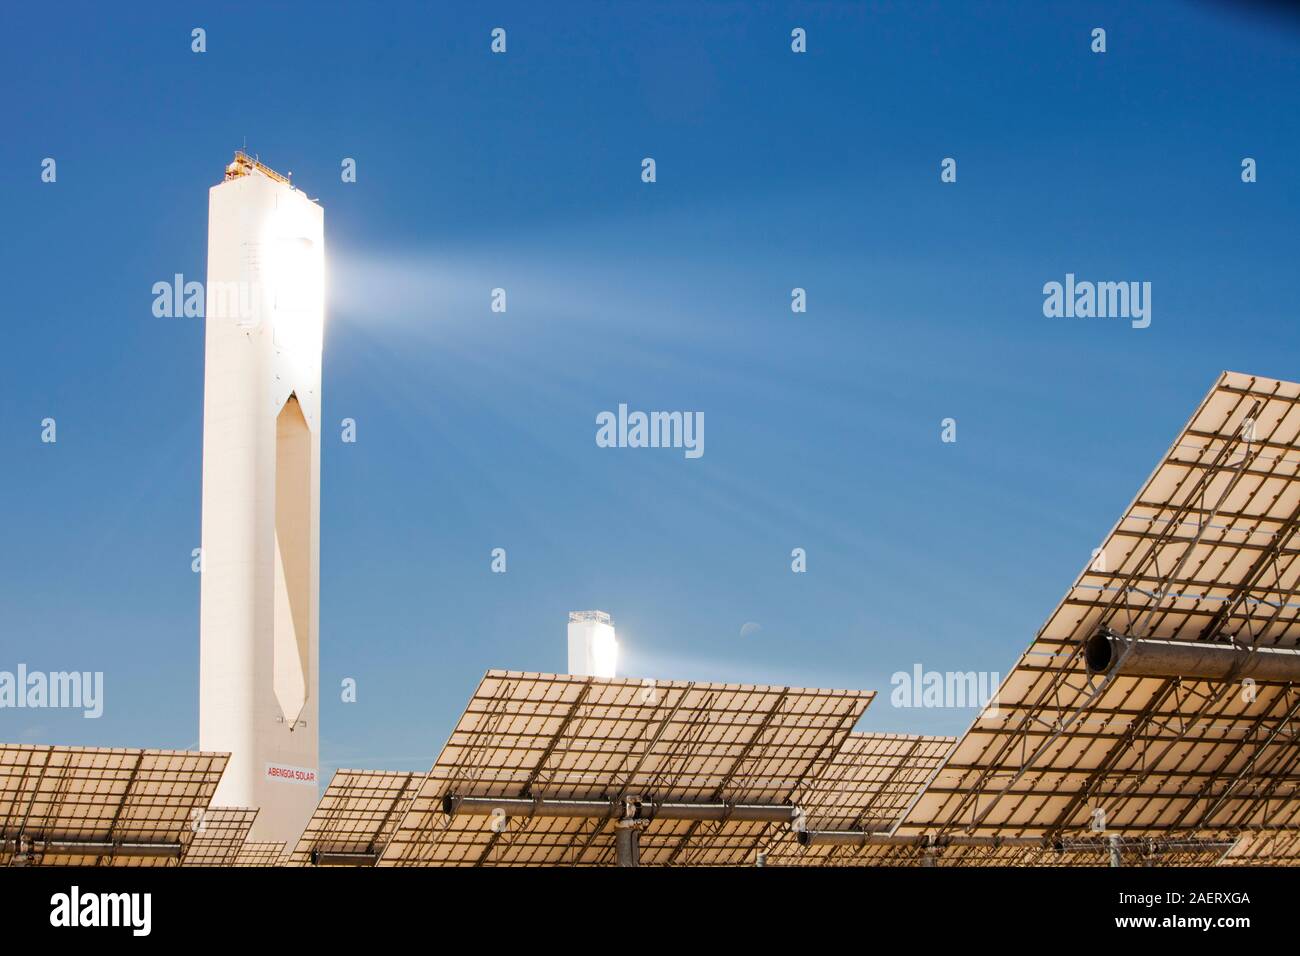 PS20 solare termico tower, il solo tale lavorazione torre solare attualmente in tutto il mondo. La sua è una parte della Solucar complesso solare di proprietà di Abengoa ener Foto Stock